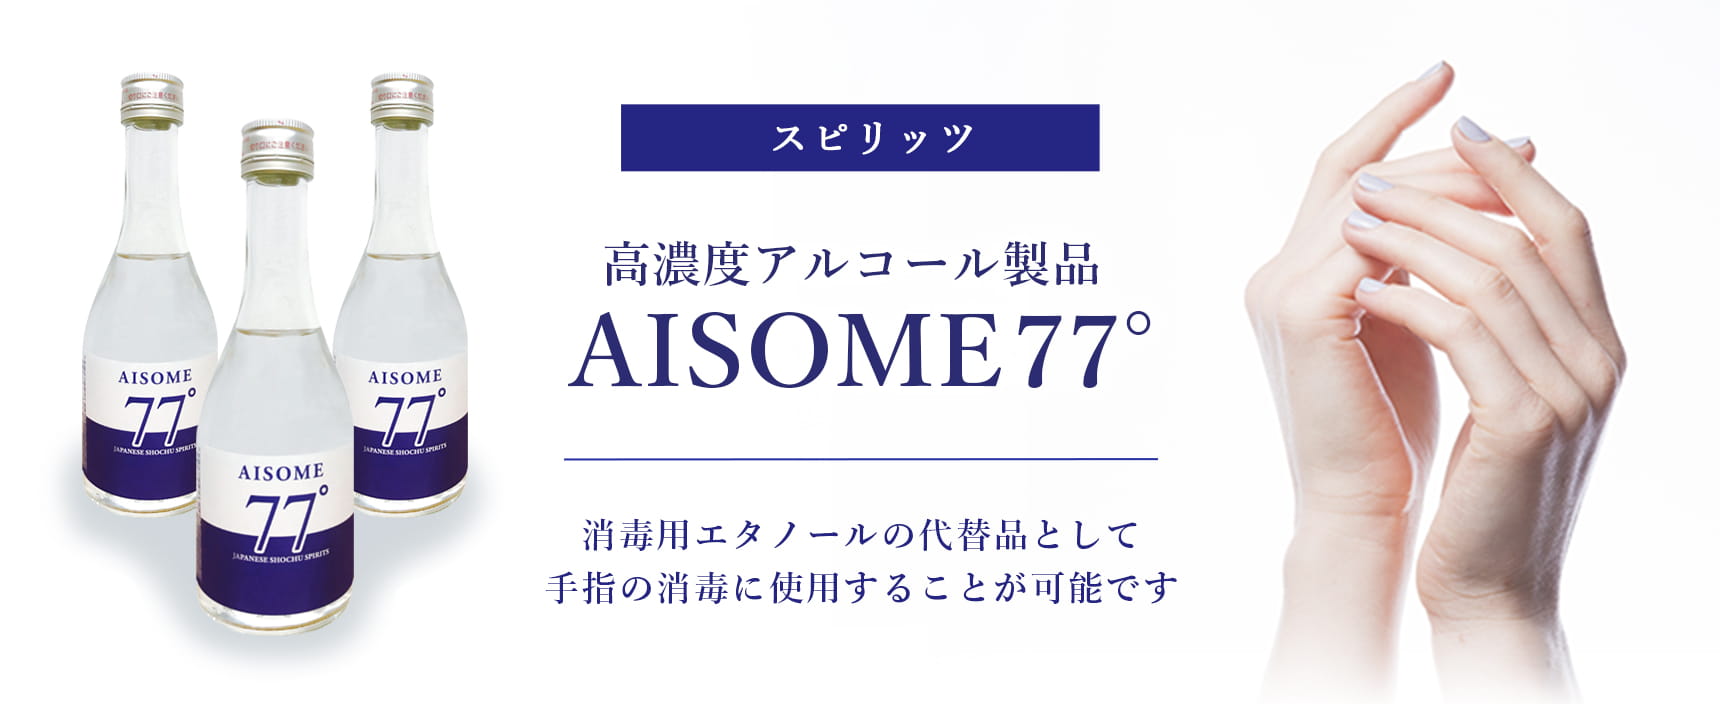 麦焼酎（スピリッツ）高濃度アルコール製品『AISOME77°』 消毒用エタノールの代替品として手指の消毒に使用することが可能です